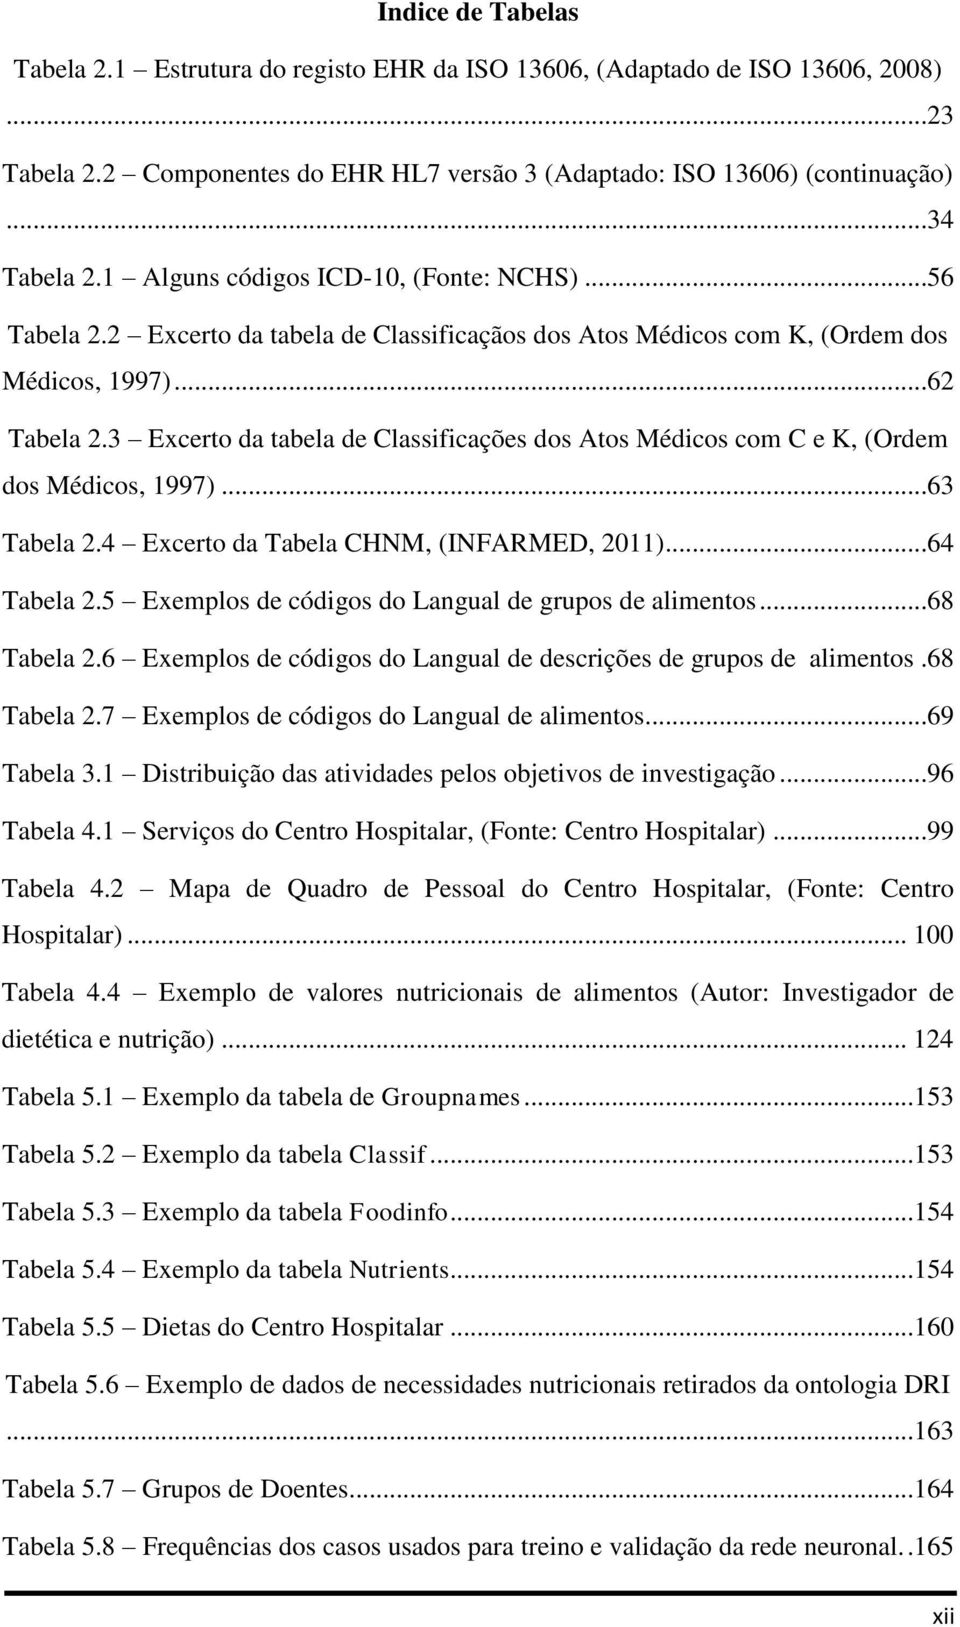 3 Excerto da tabela de Classificações dos Atos Médicos com C e K, (Ordem dos Médicos, 1997)...63 Tabela 2.4 Excerto da Tabela CHNM, (INFARMED, 2011)...64 Tabela 2.